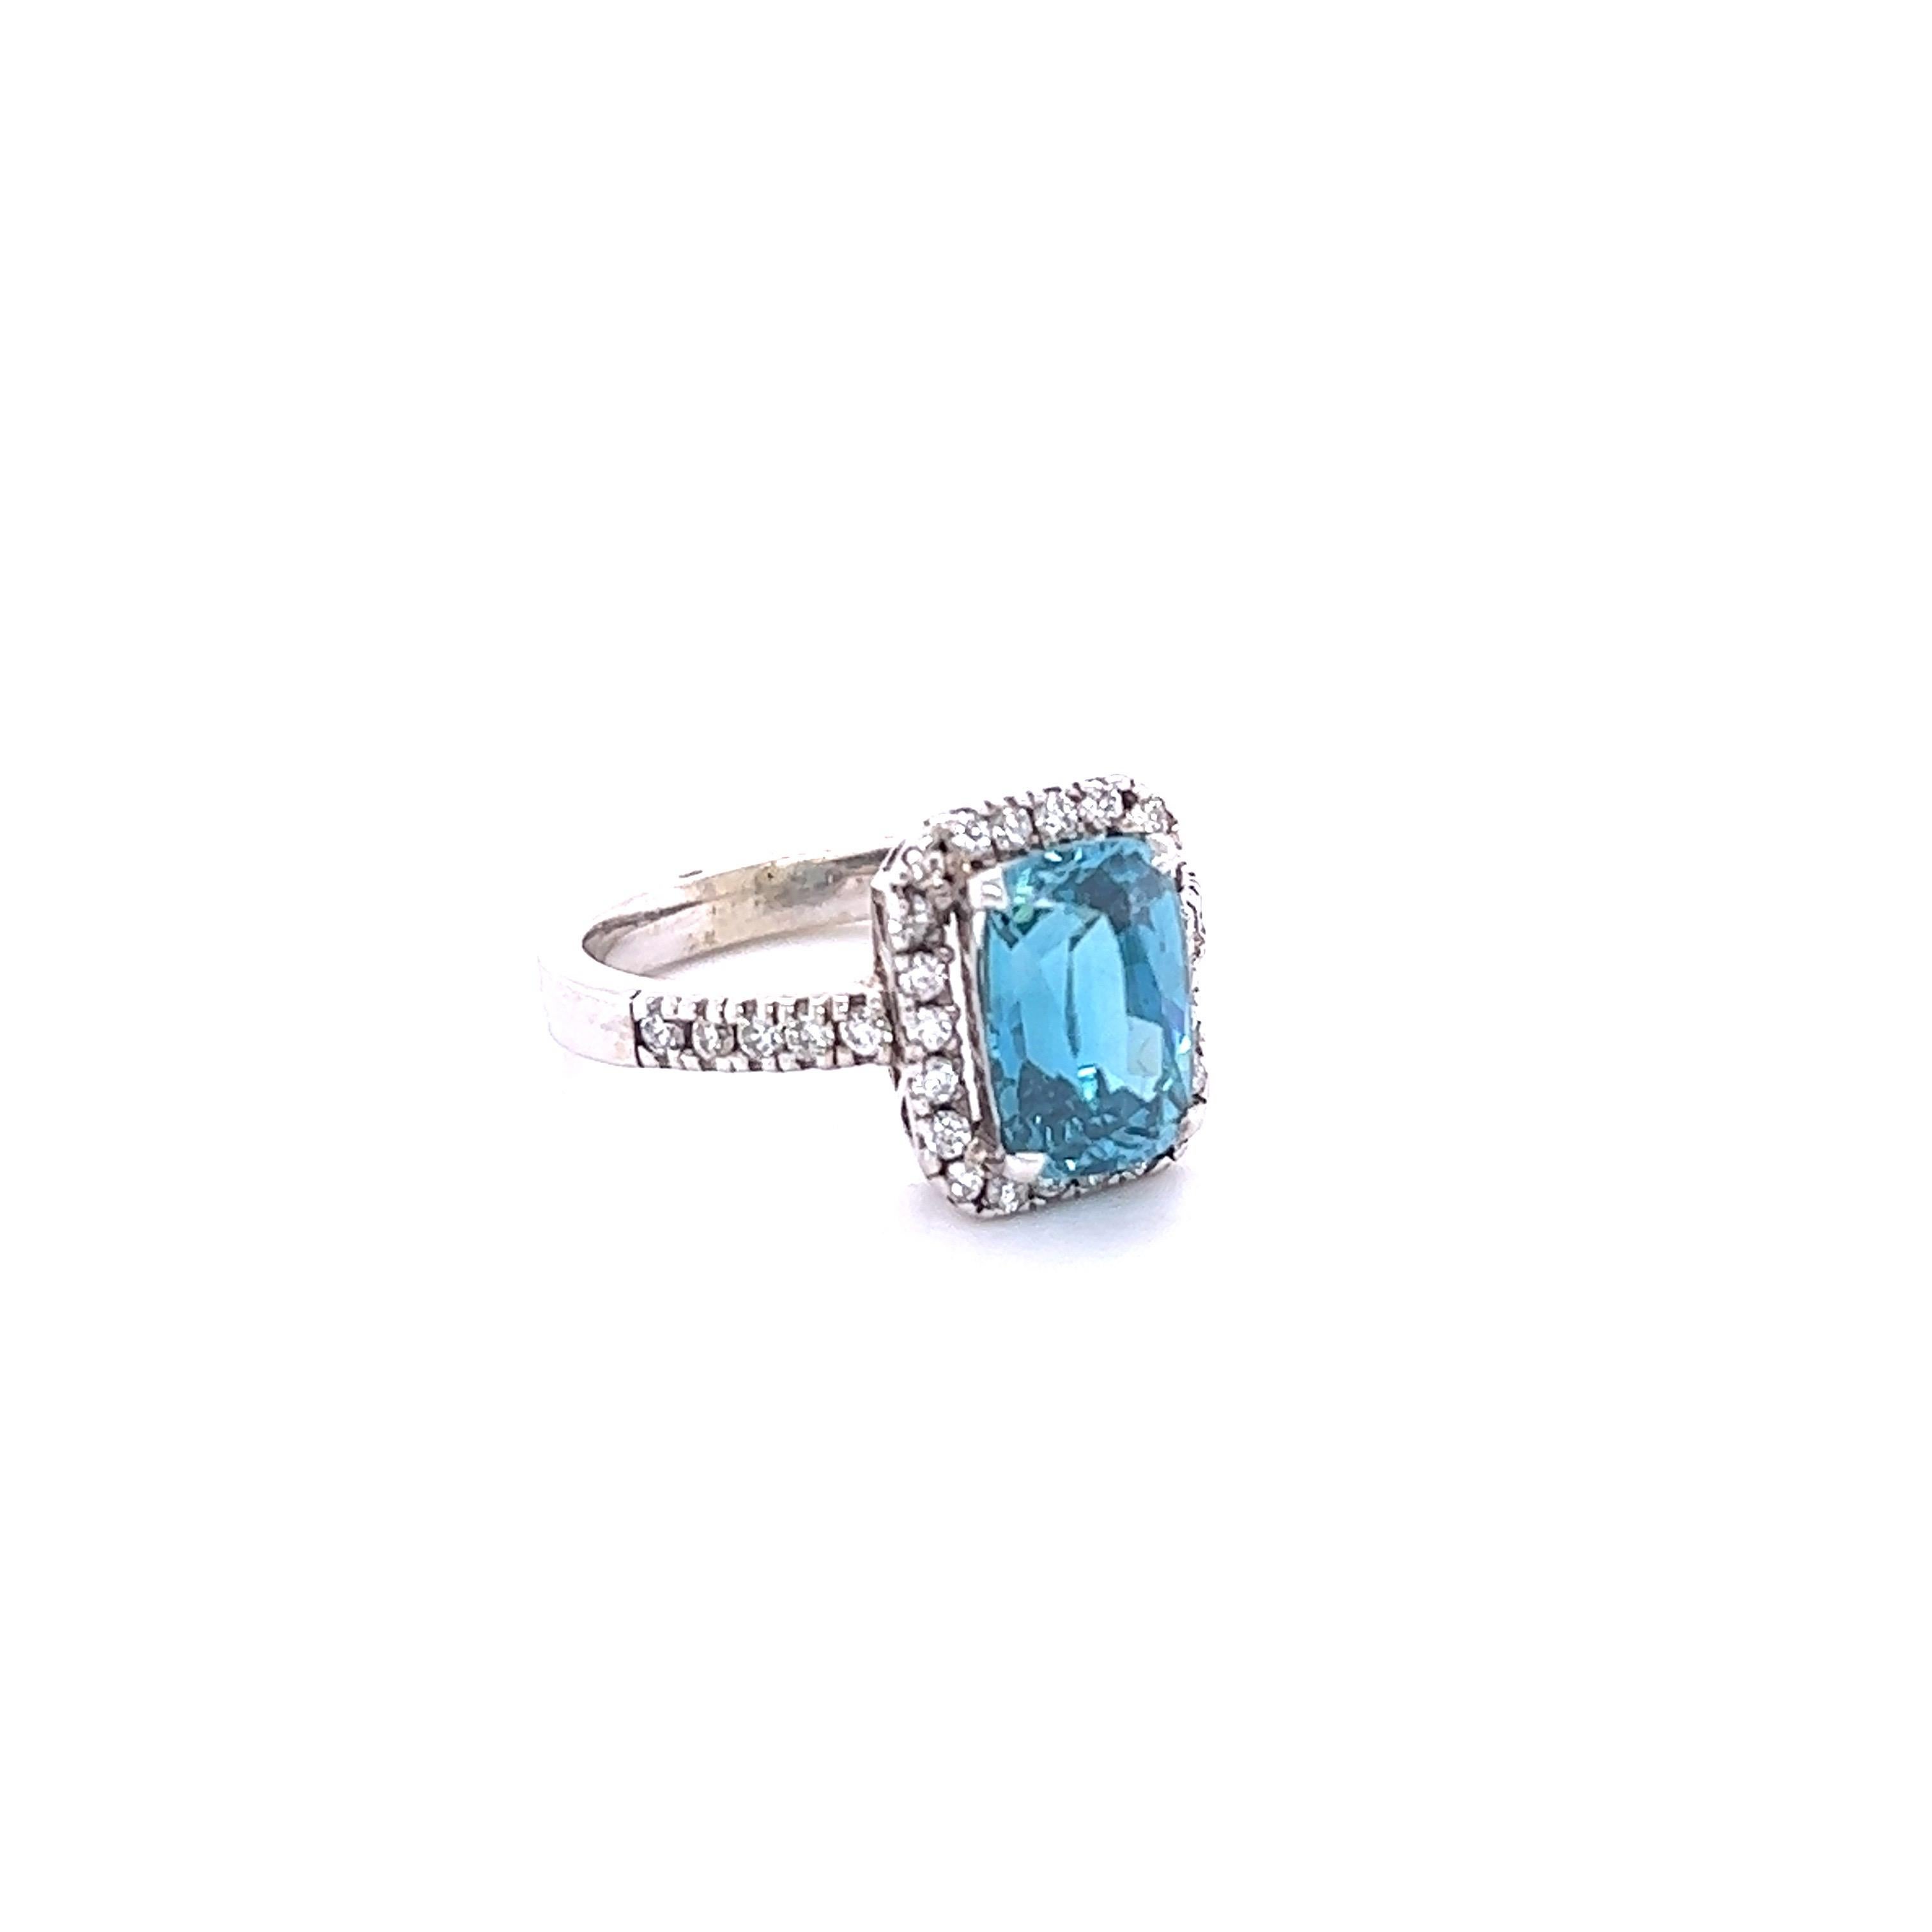 Le zircon bleu est une pierre naturelle extraite principalement au Sri Lanka, au Myanmar et en Australie.  
Cette bague contient un zircon bleu de taille ovale émeraude qui pèse 4.66 carats et est entouré de 32 diamants de taille ronde qui pèsent